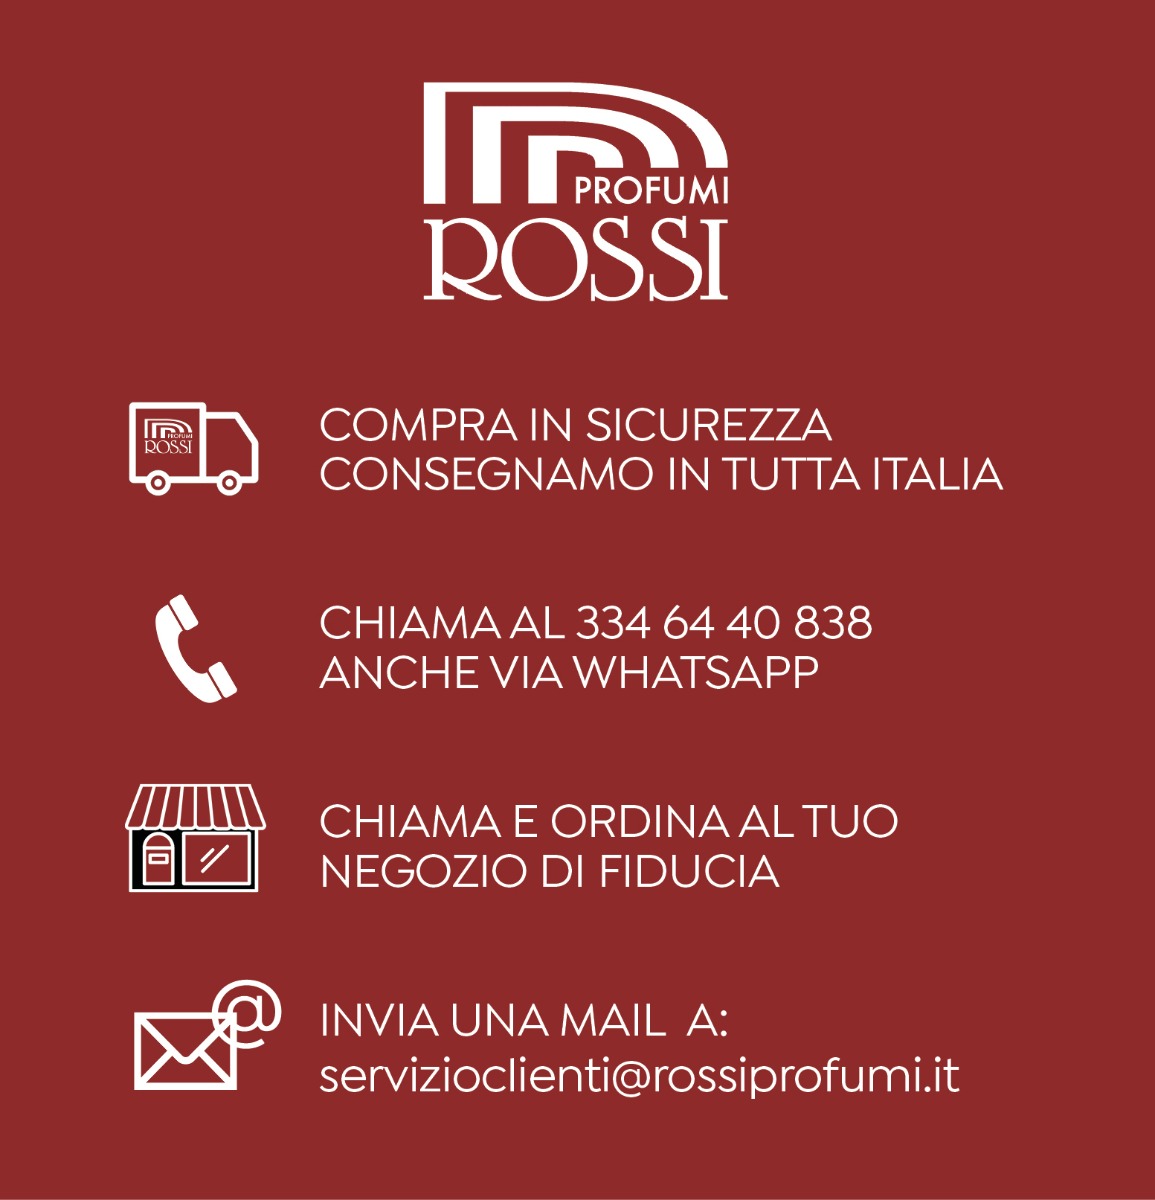 Rossi Profumi Consegna in tutta Italia